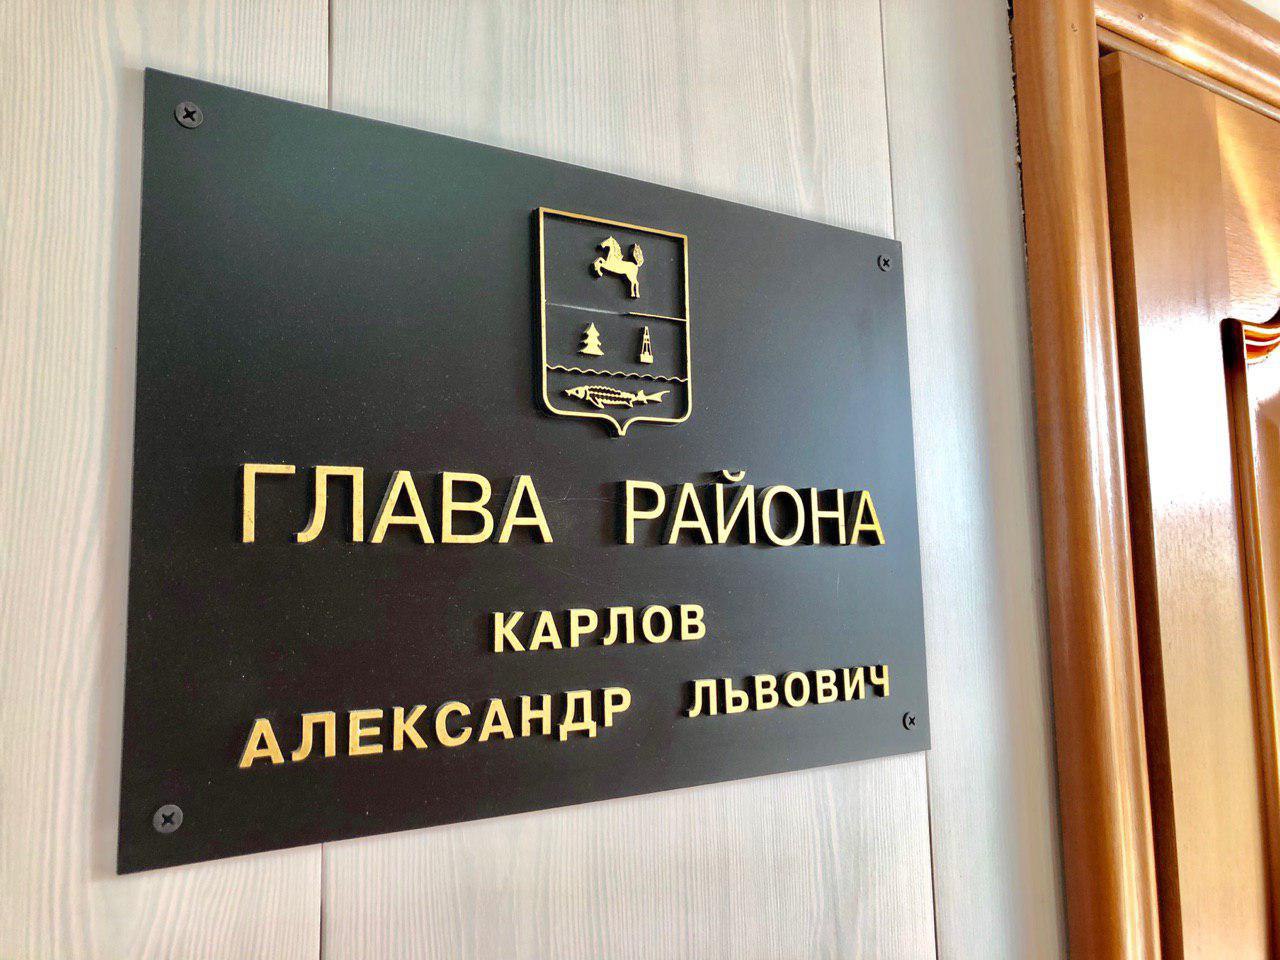 Сегодня в администрации района прошло аппаратное совещание под руководством первого заместителя главы Елены Рязановой.